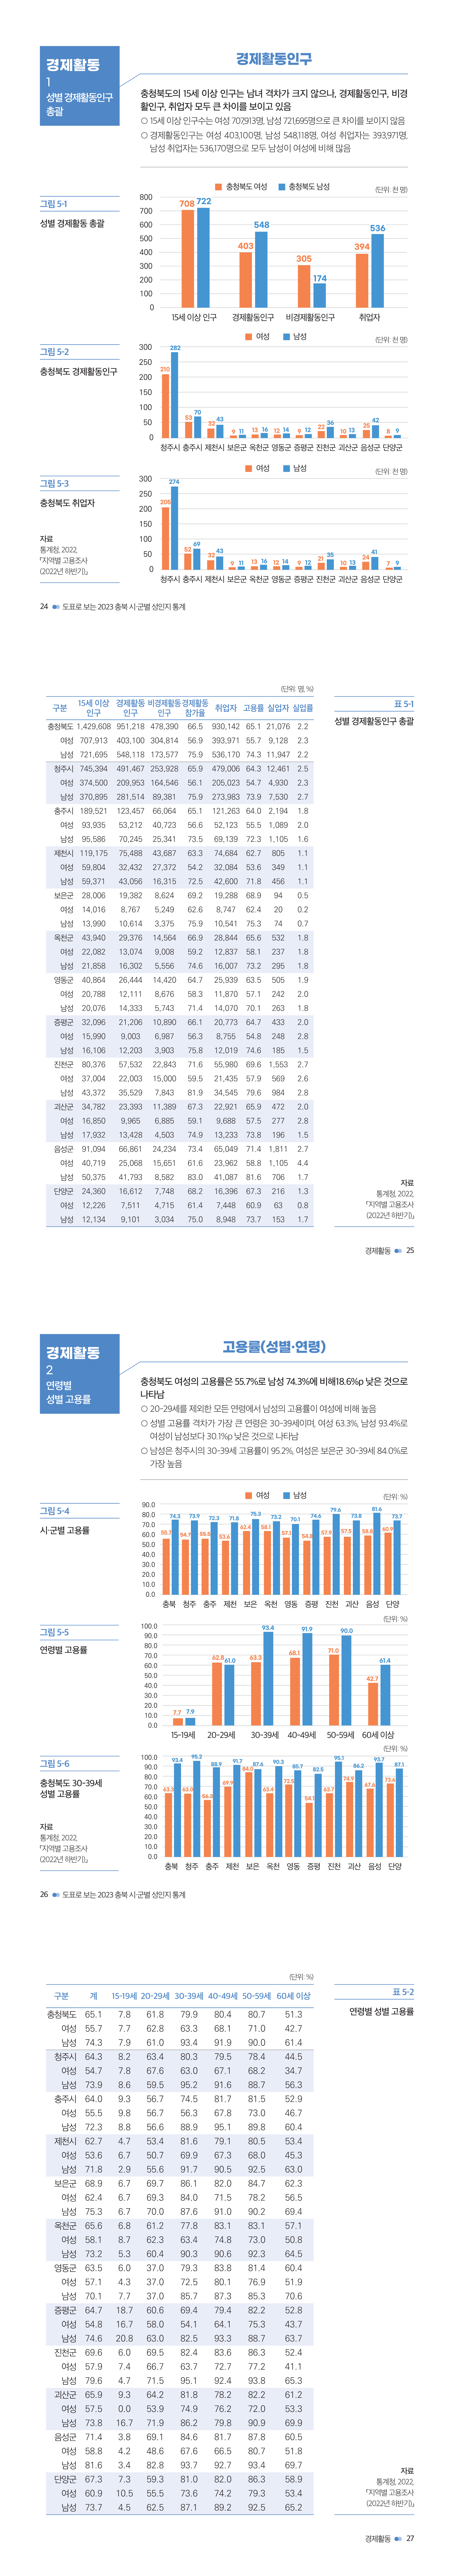 충북여성재단-성인지통계(인포)_웹용_경제1.jpg